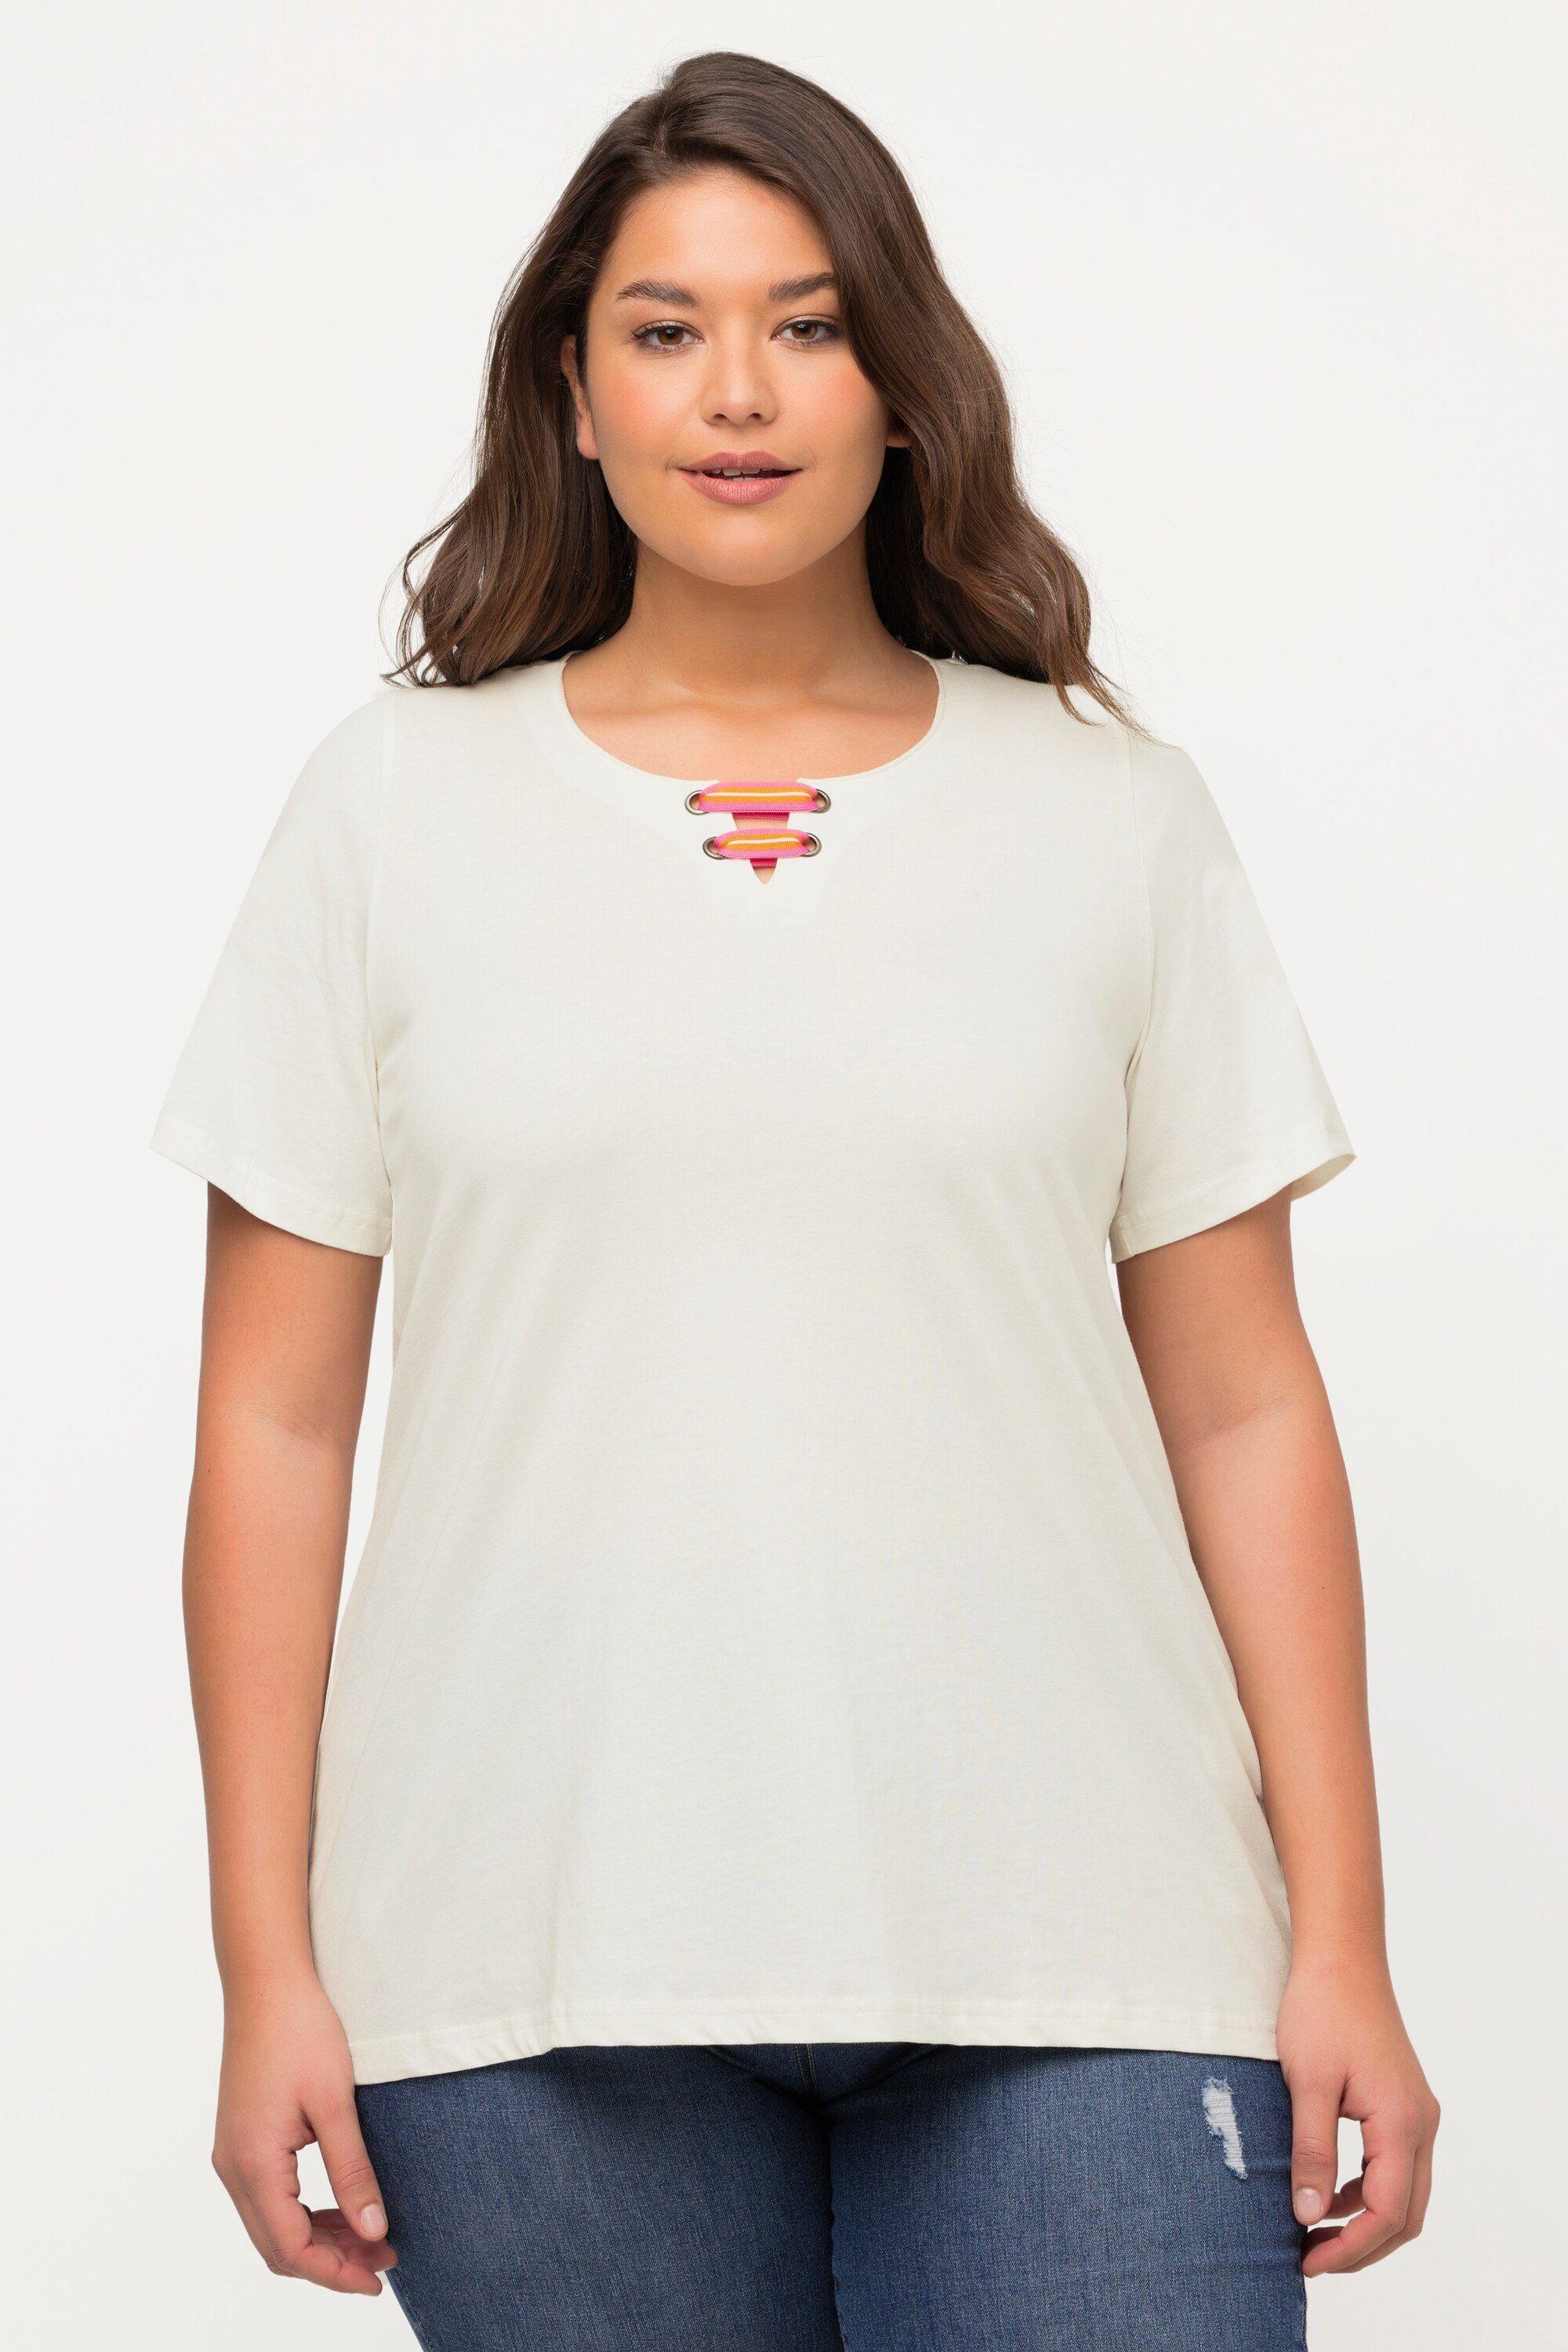 T-Shirt A-Linie offwhite Popken Tunika-Ausschnitt Rundhalsshirt Ulla Flügel-Halbarm